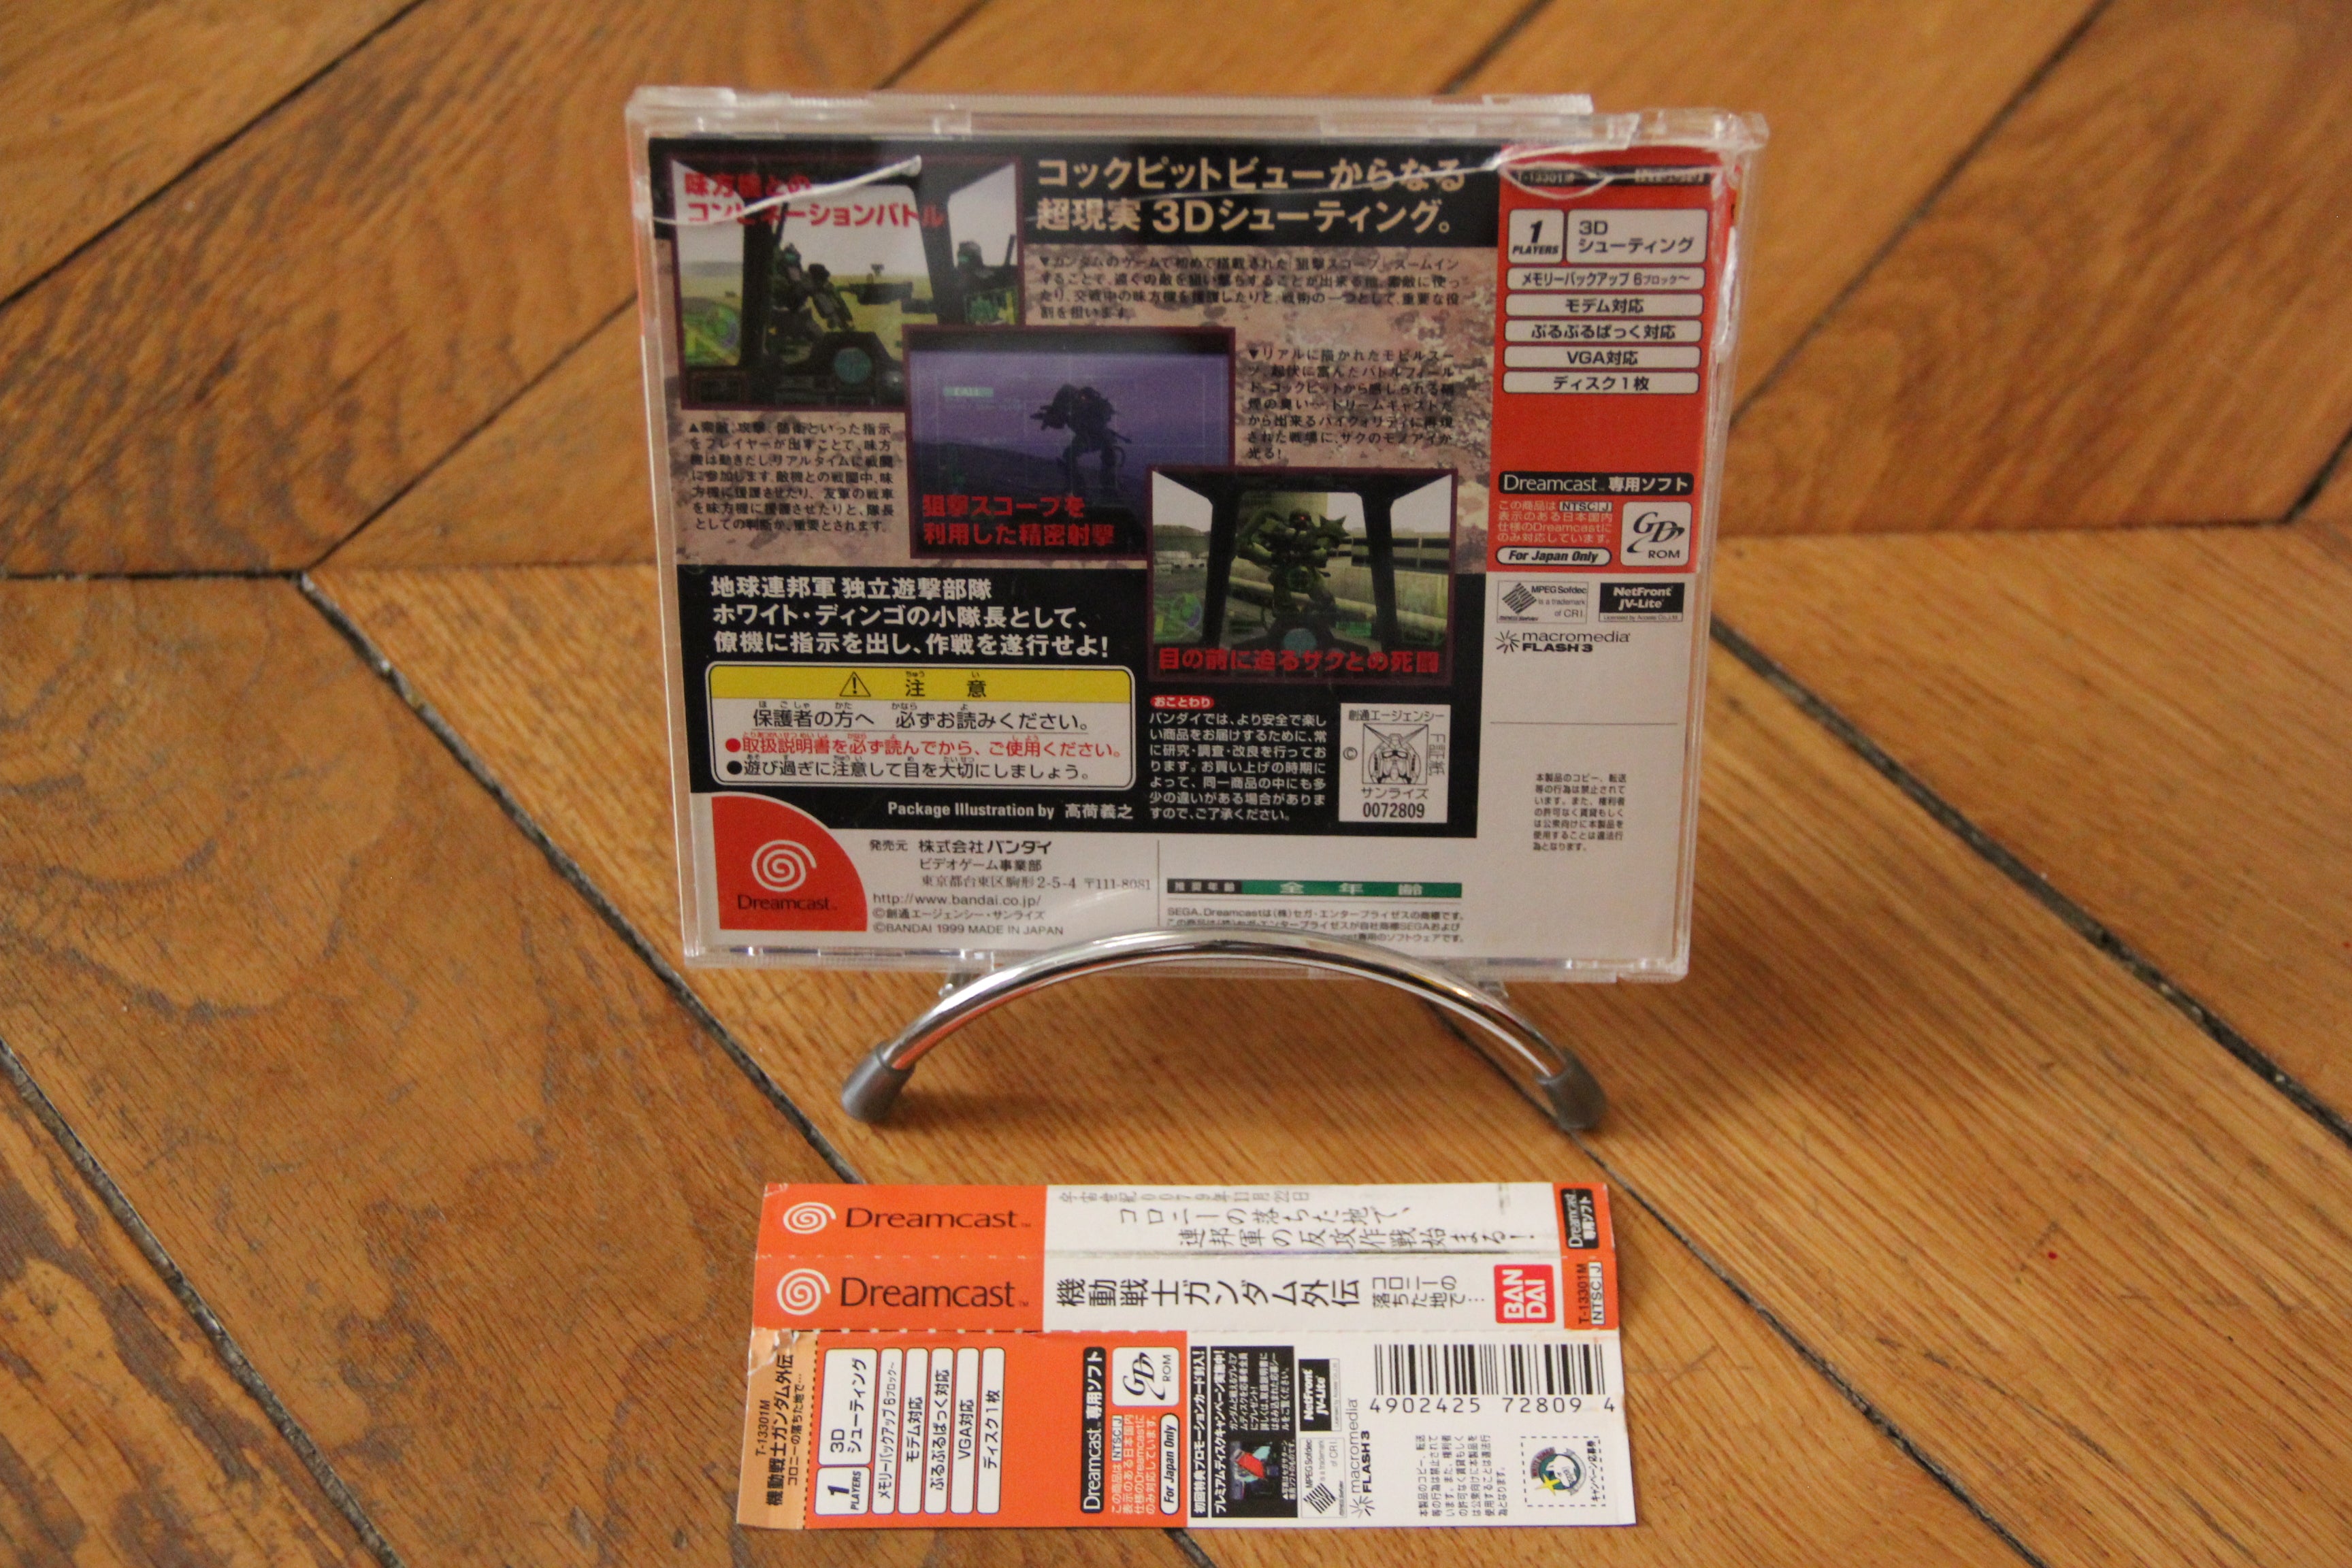 Gundam Side story 0079 Sega Dreamcast CD Rom OBI + Manual Bandai Japan T-13301M